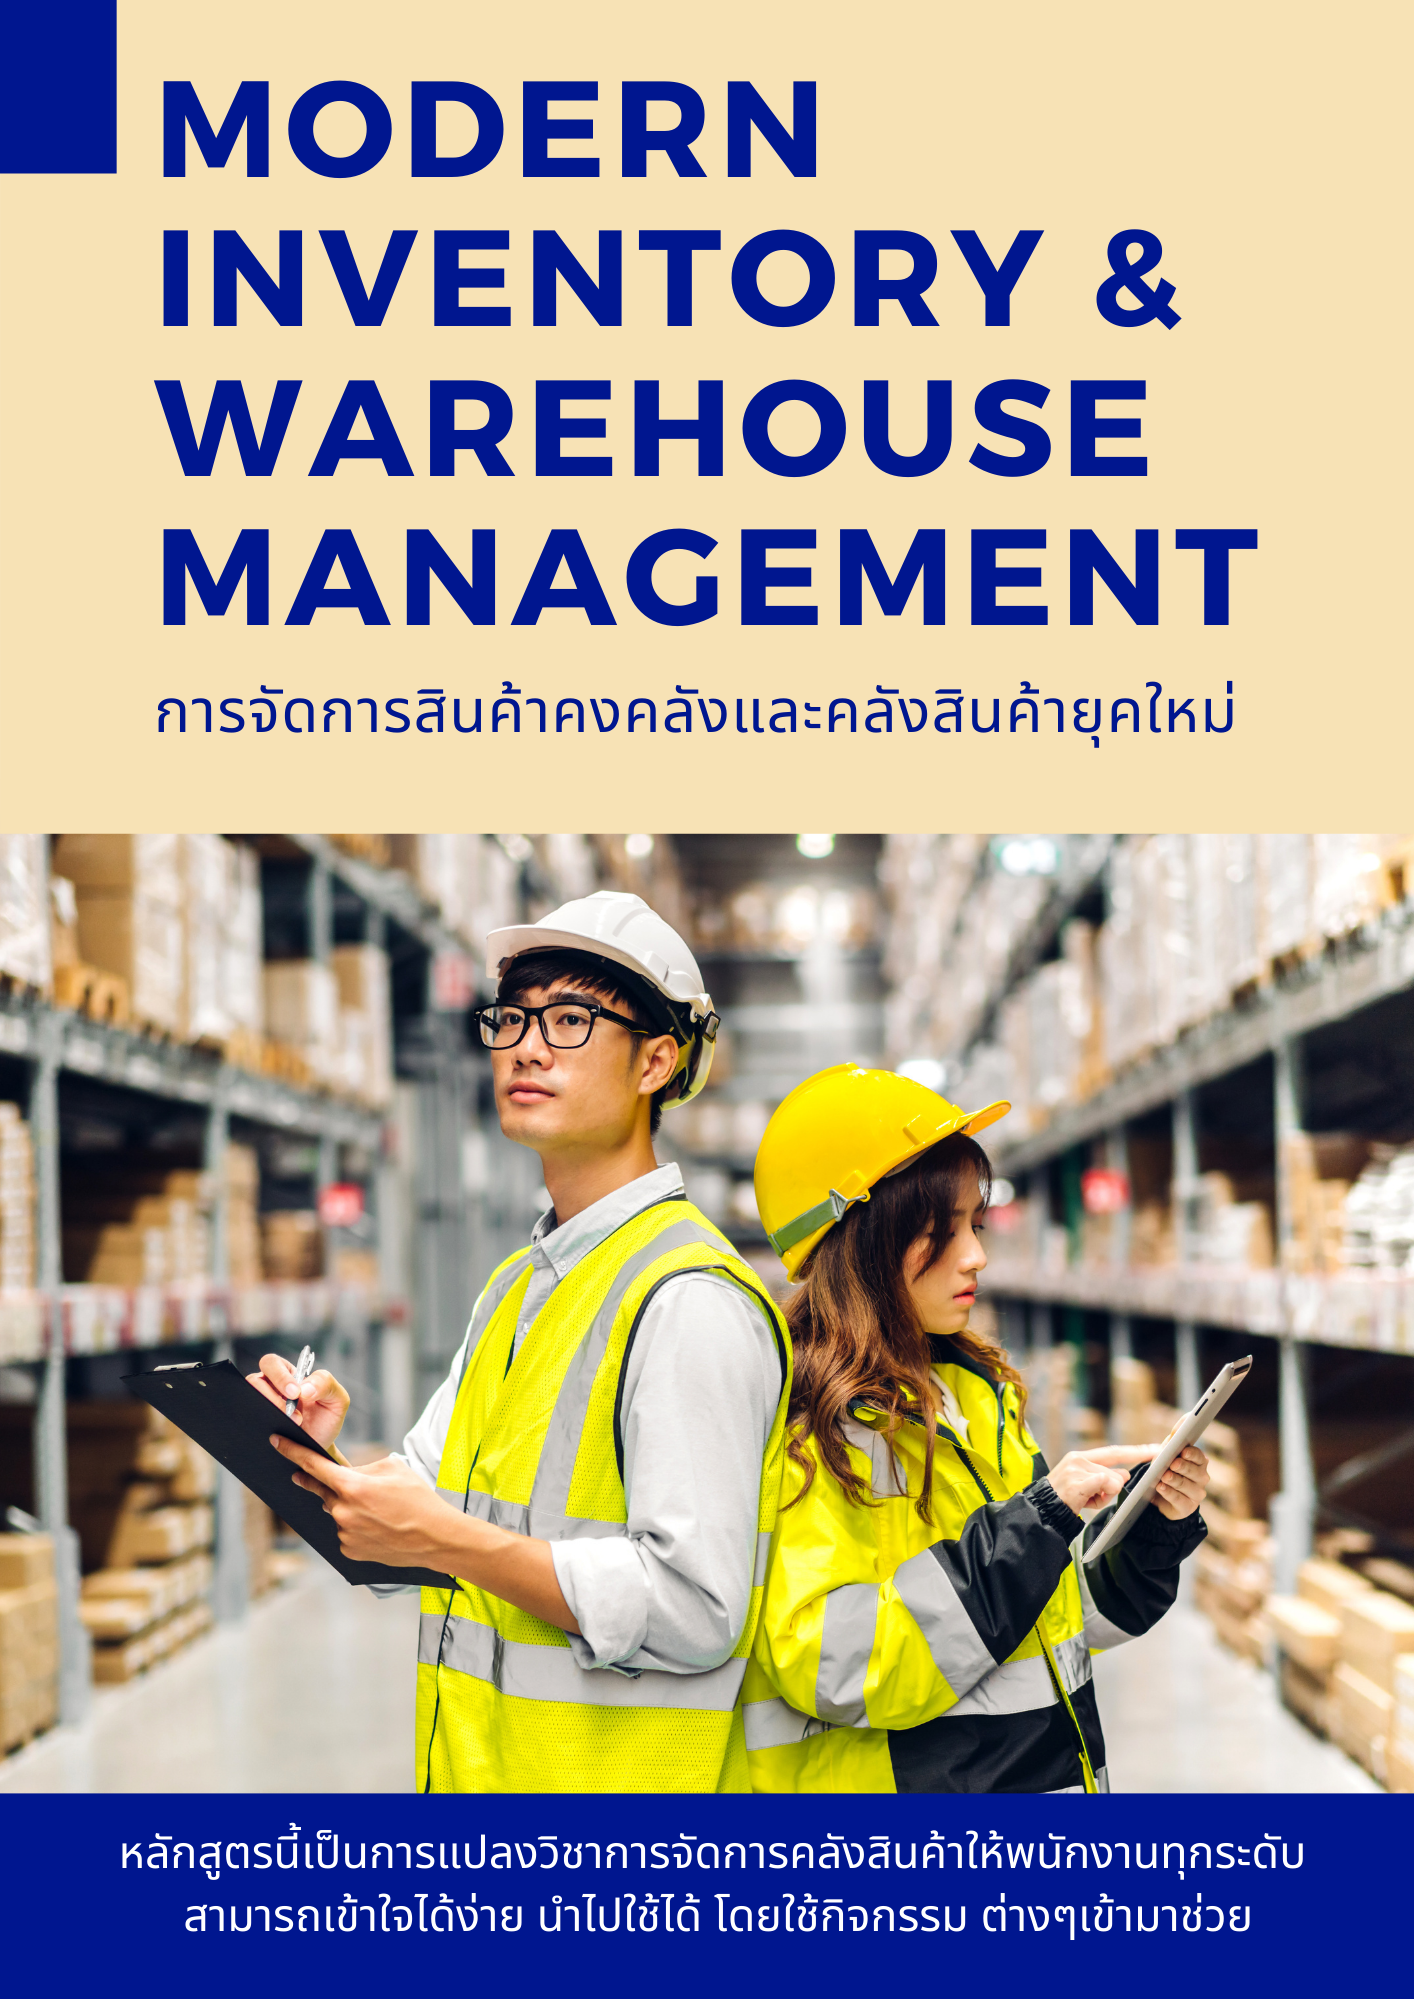 อบรมออนไลน์ผ่าน Zoom หลักสูตร การจัดการสินค้าคงคลังและคลังสินค้ายุคใหม่ (Modern Inventory & Warehouse Management)